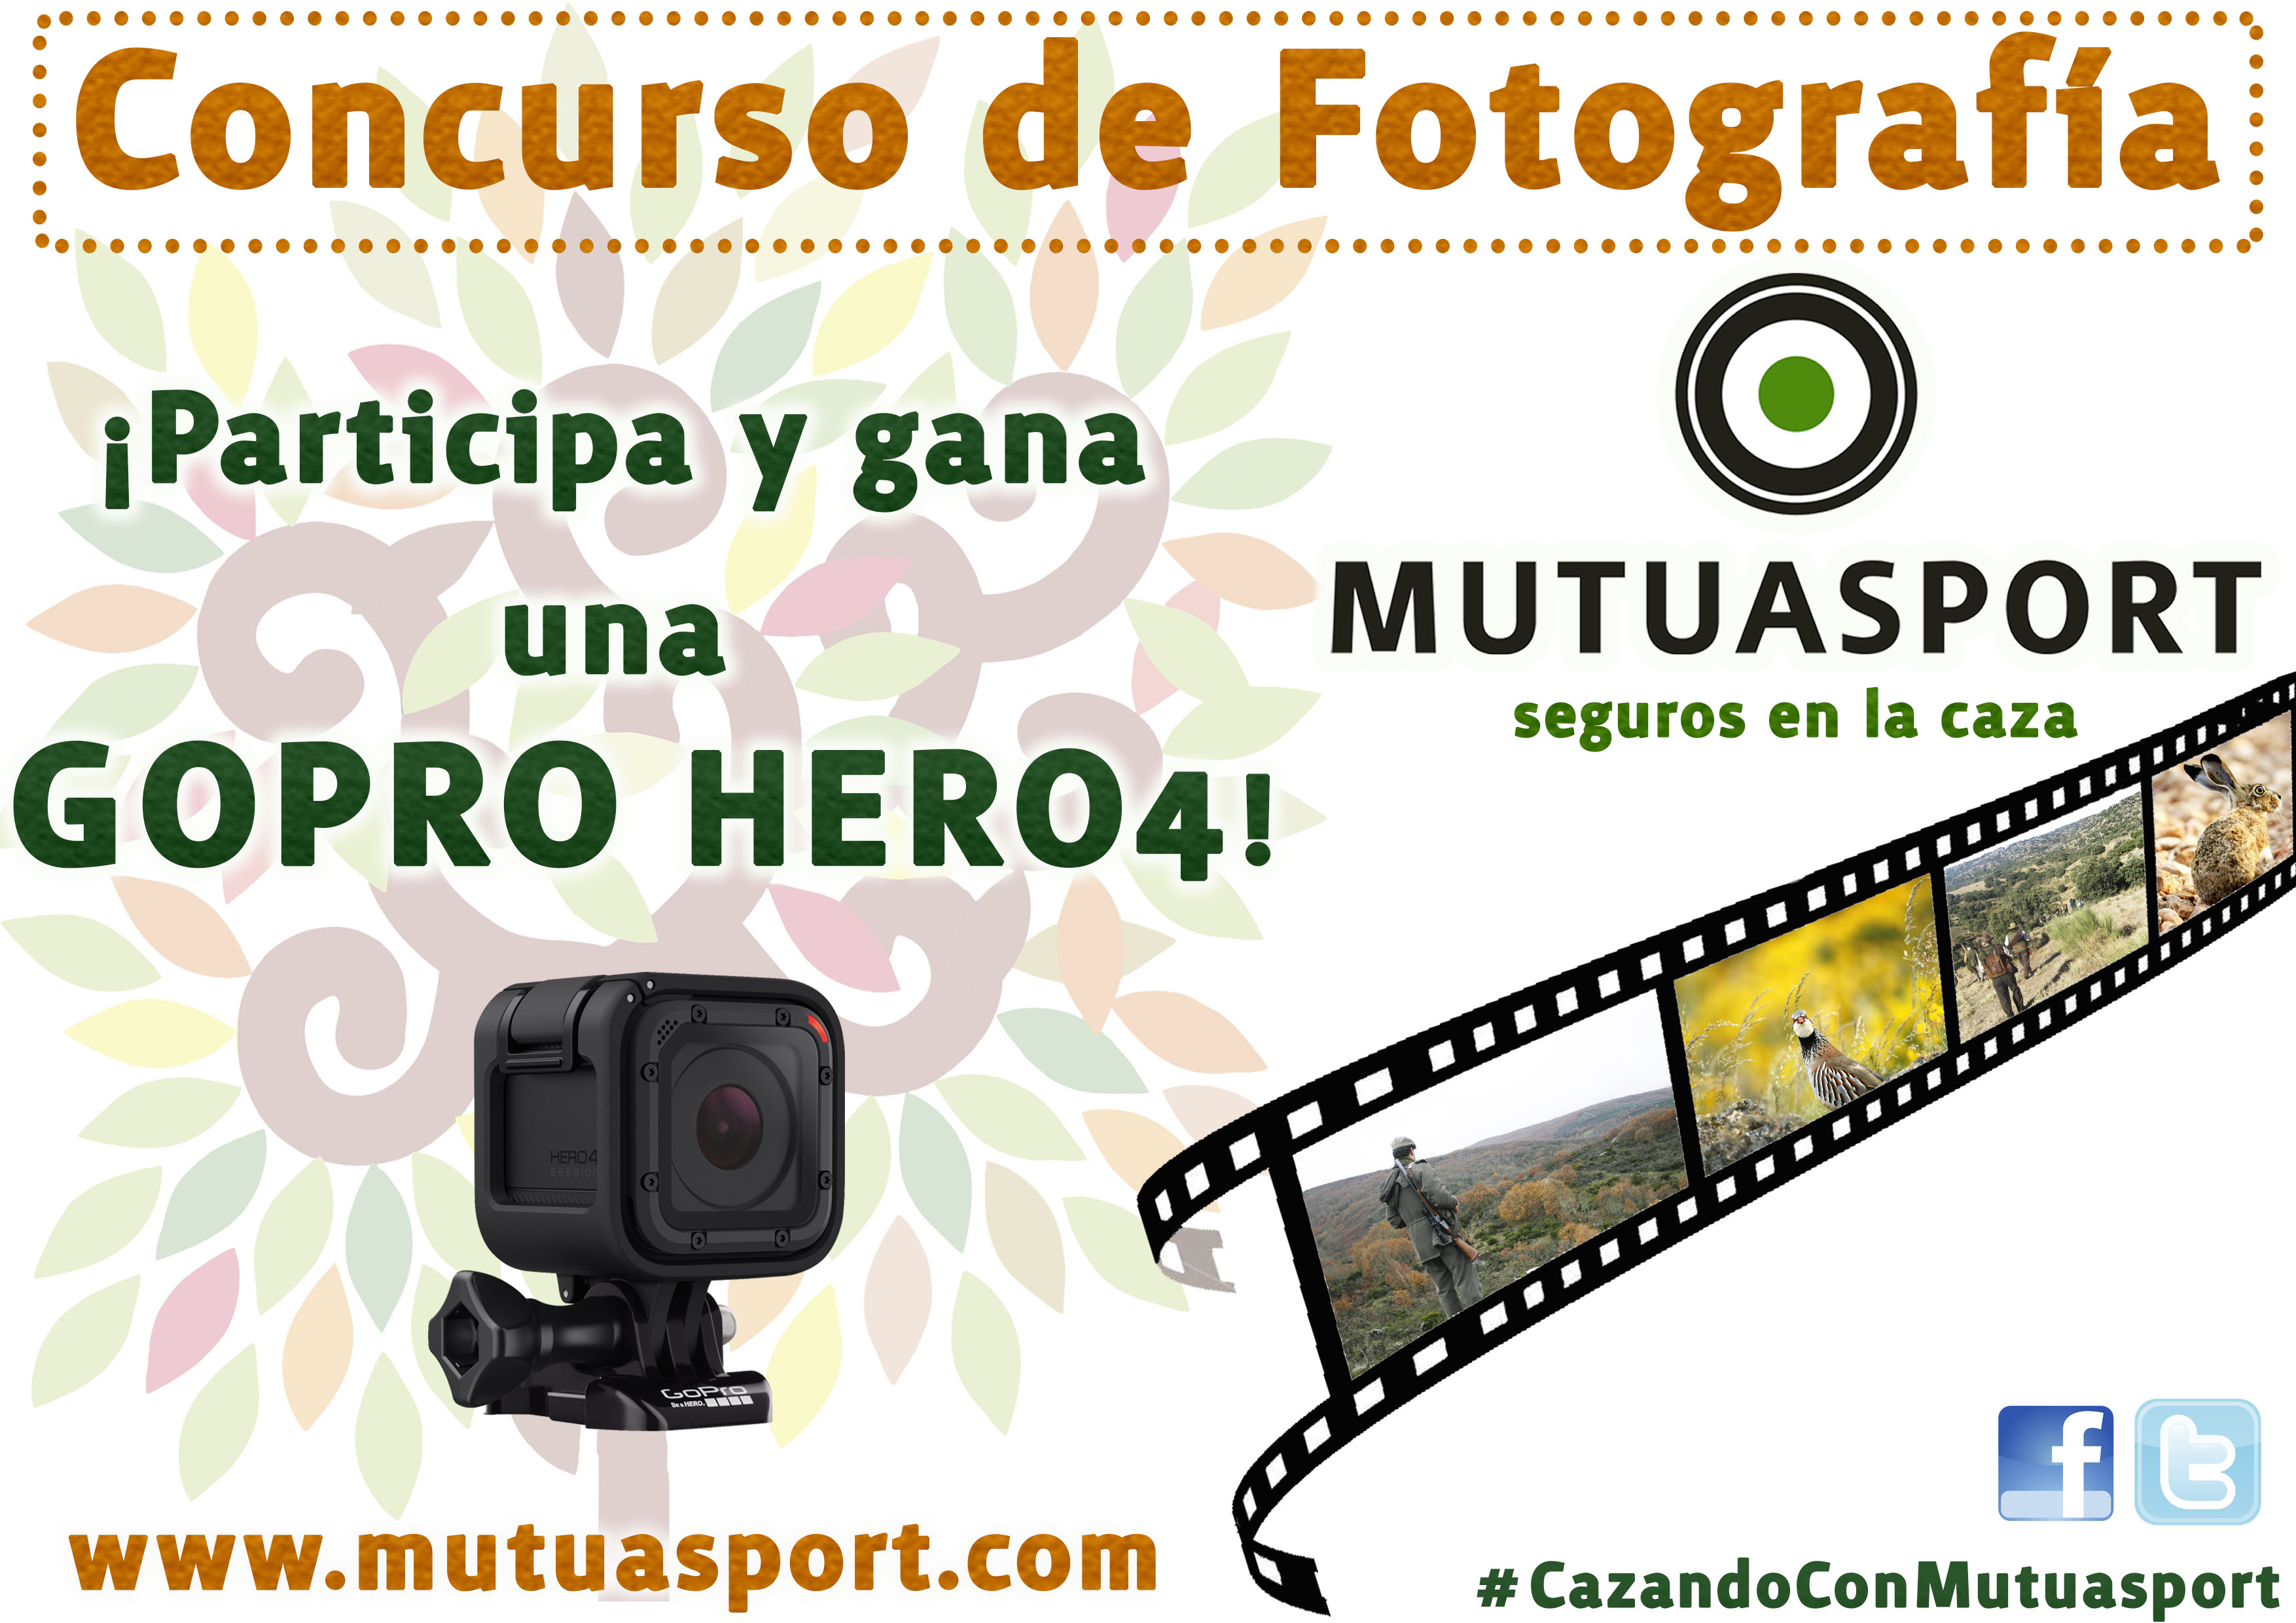 Mutuasport convoca un Concurso de Fotografía en Redes Sociales